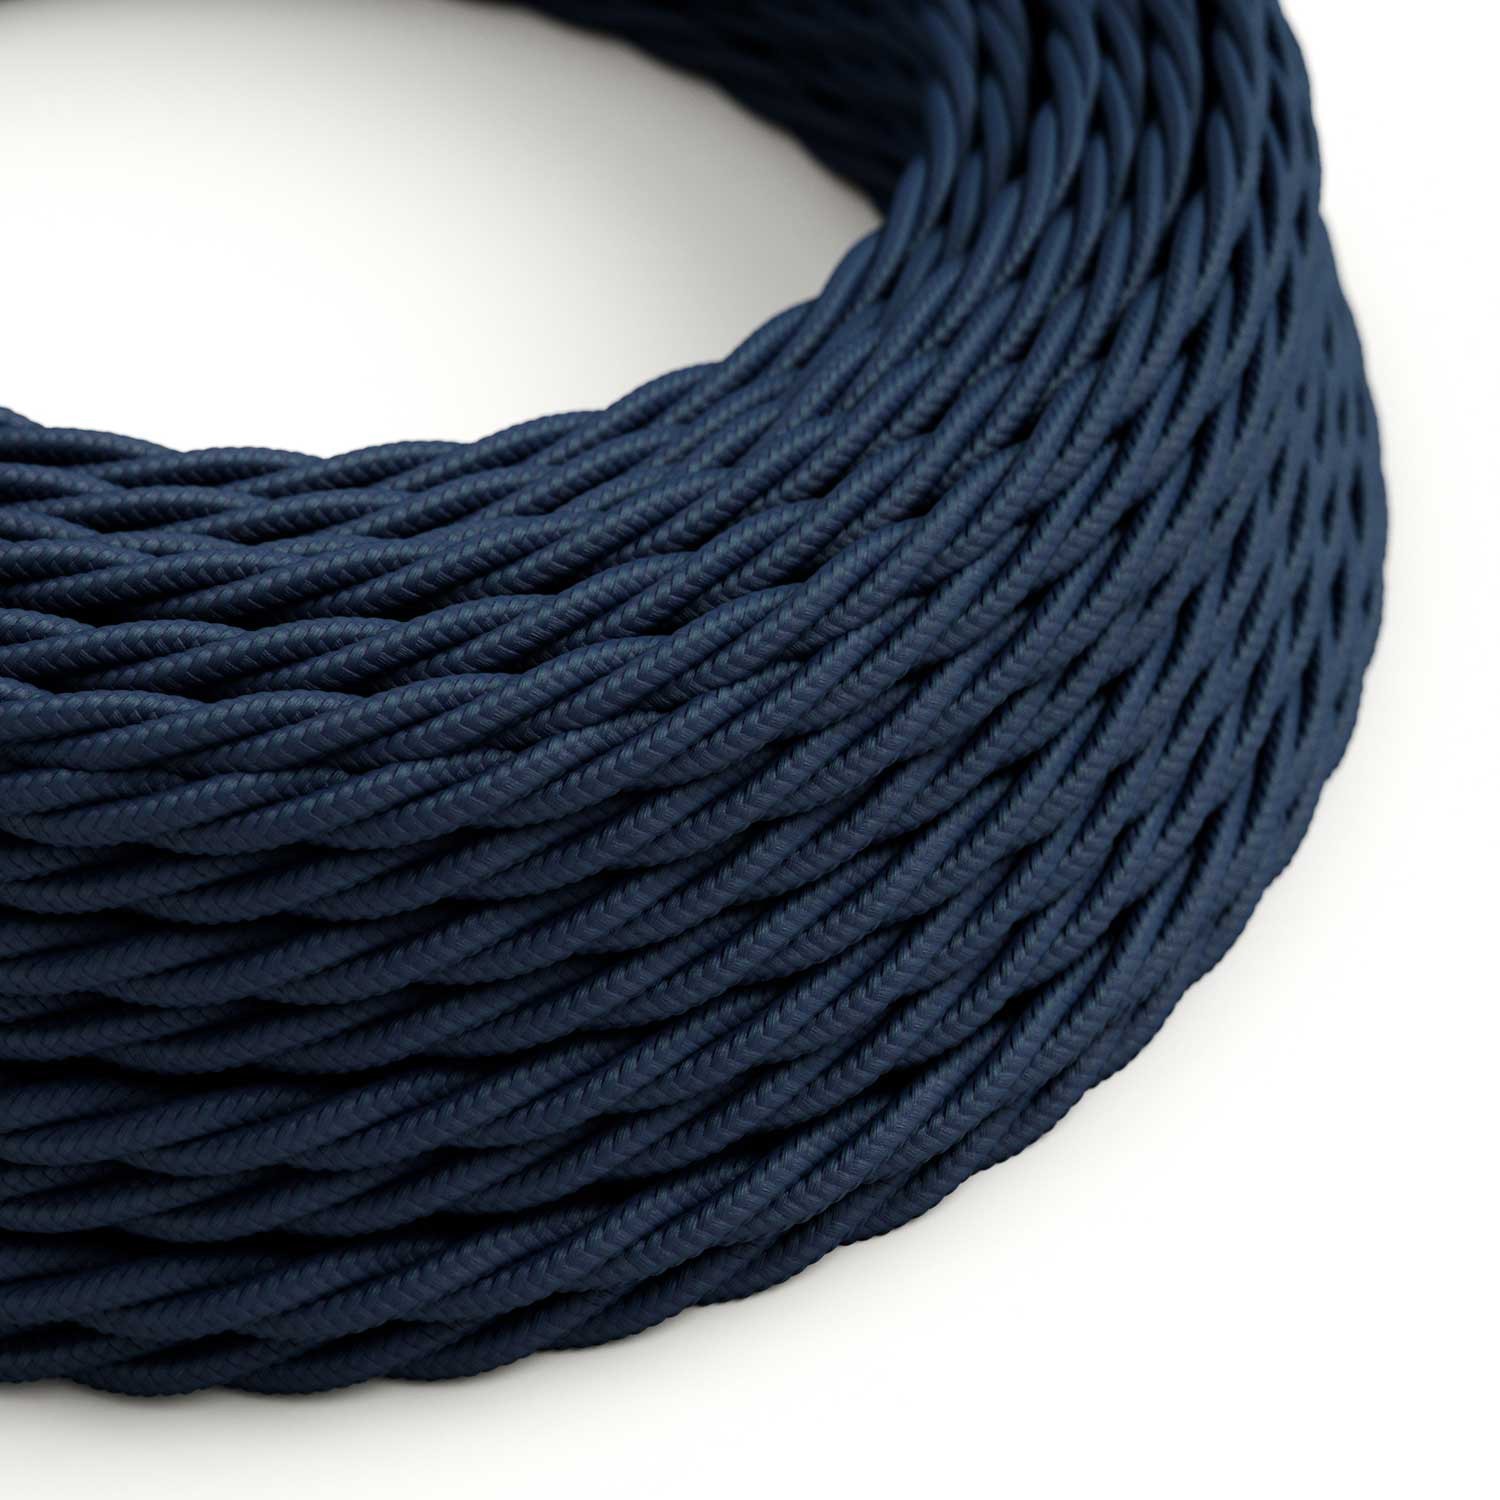 Textilkabel, tiefblau glänzend - Das Original von Creative-Cables - TM20 geflochten 2x0.75mm / 3x0.75mm